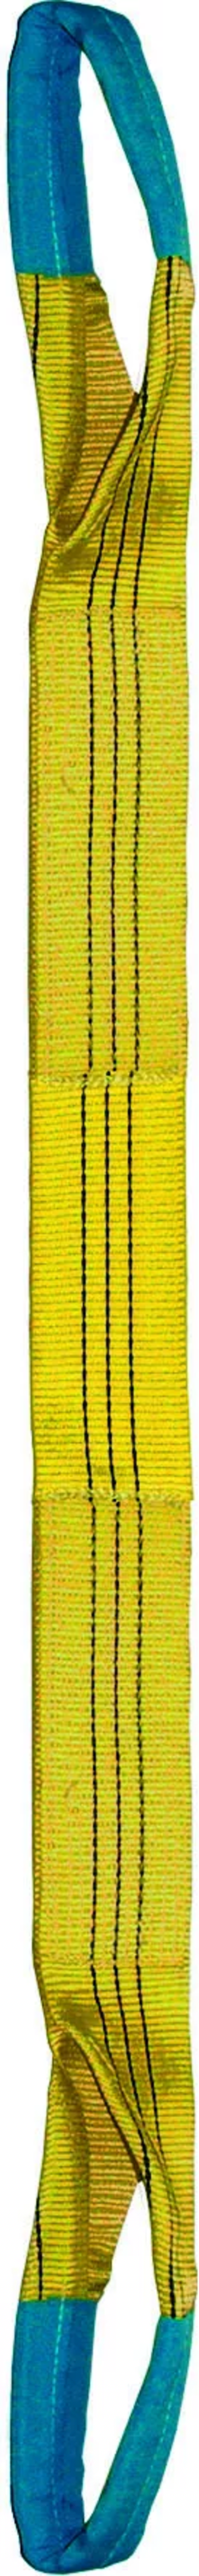 Élingue sangle double 90 mm cmu 3 t jaune boucles repliées lg. 2 m LEVAC - 4822C20